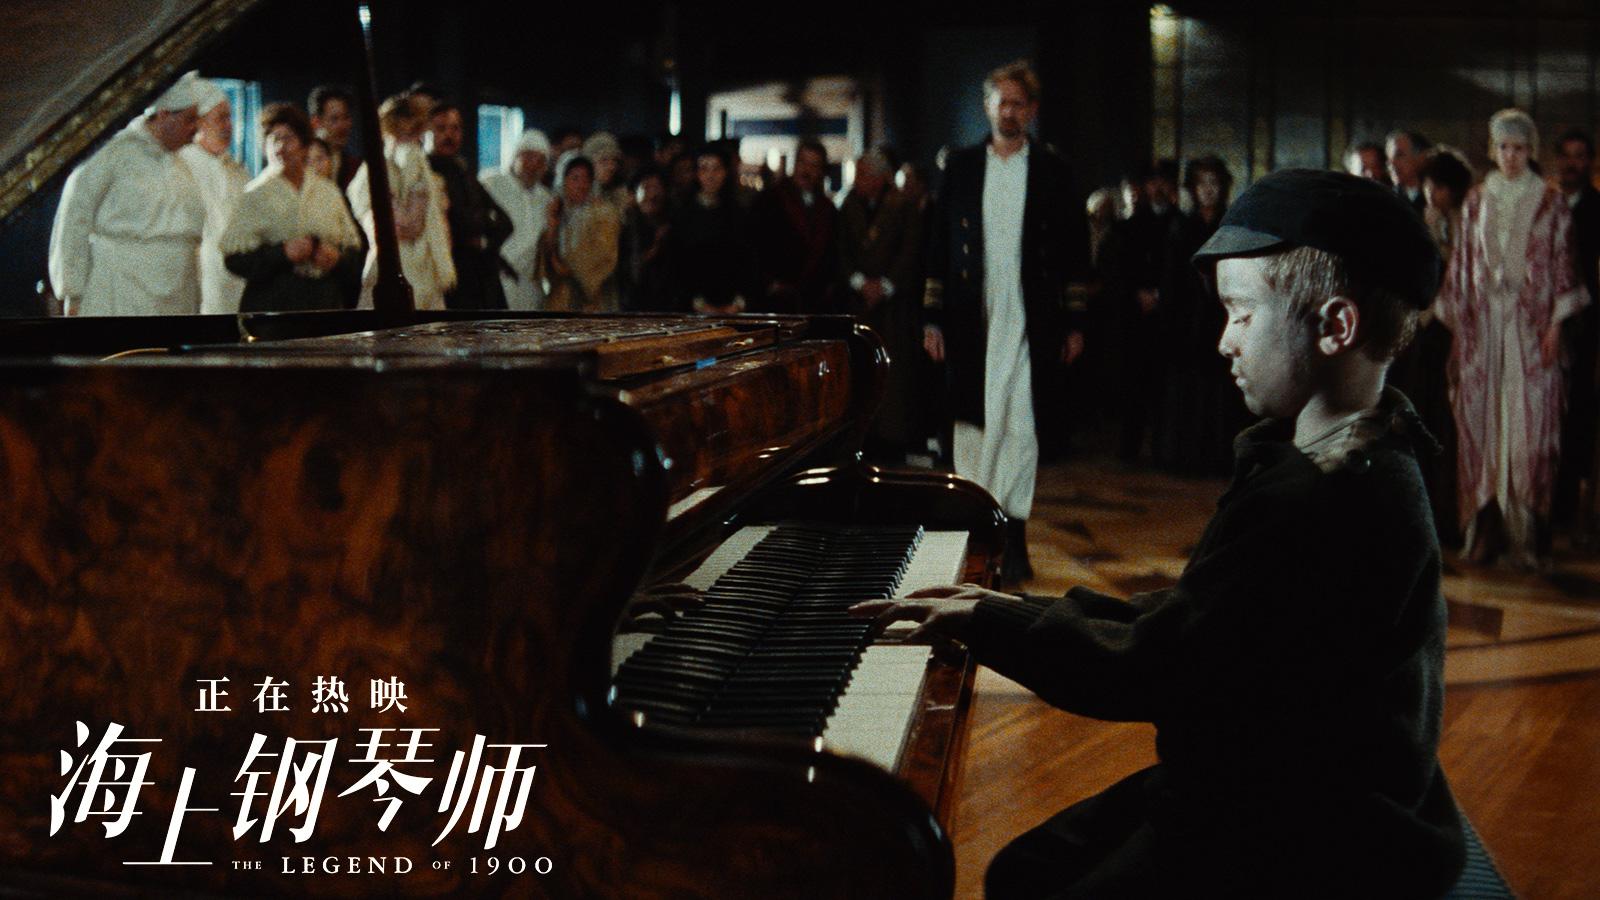 浪漫而唯美的音乐,《海上钢琴师》堪称电影音乐殿堂的无价之宝!